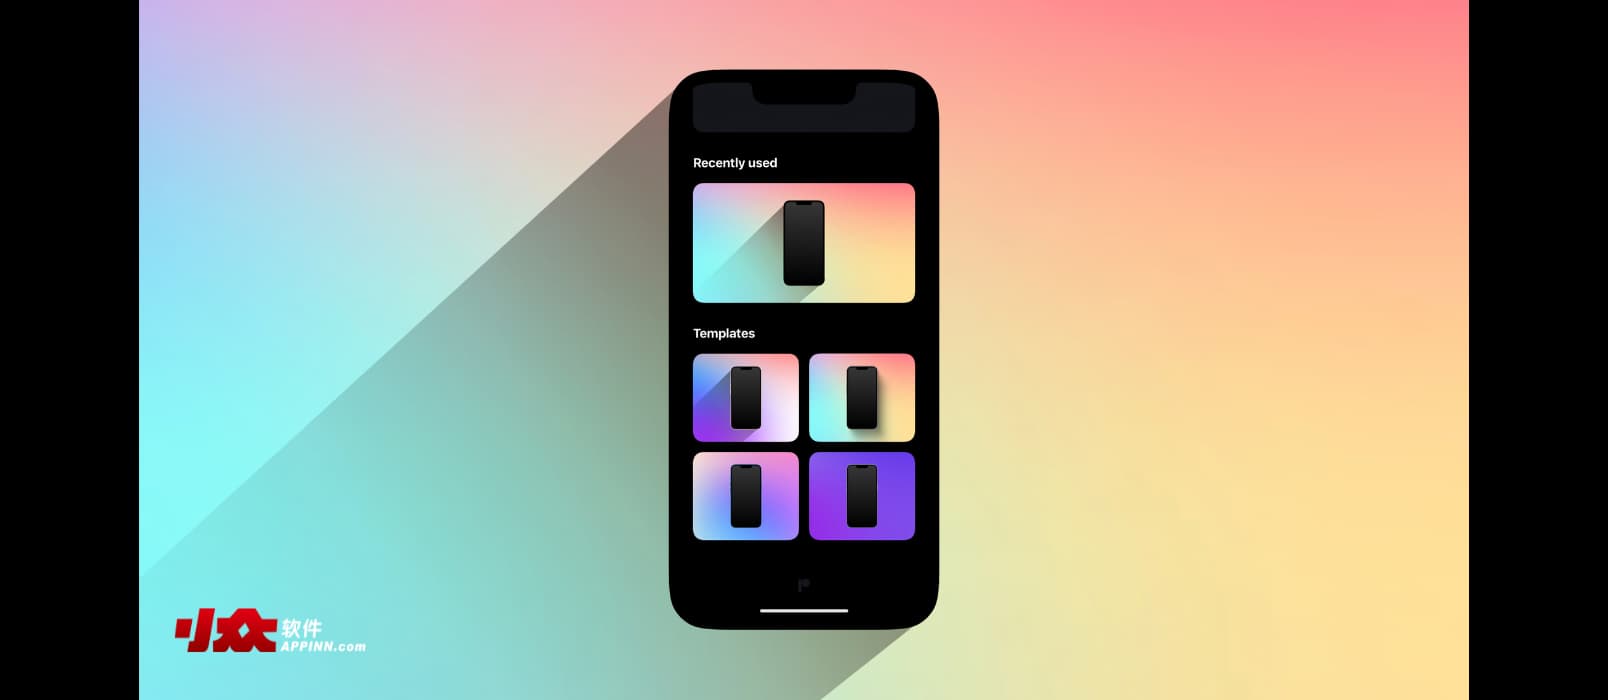 PopFrame - 为 iPhone 截图添加背景与外壳，支持视频